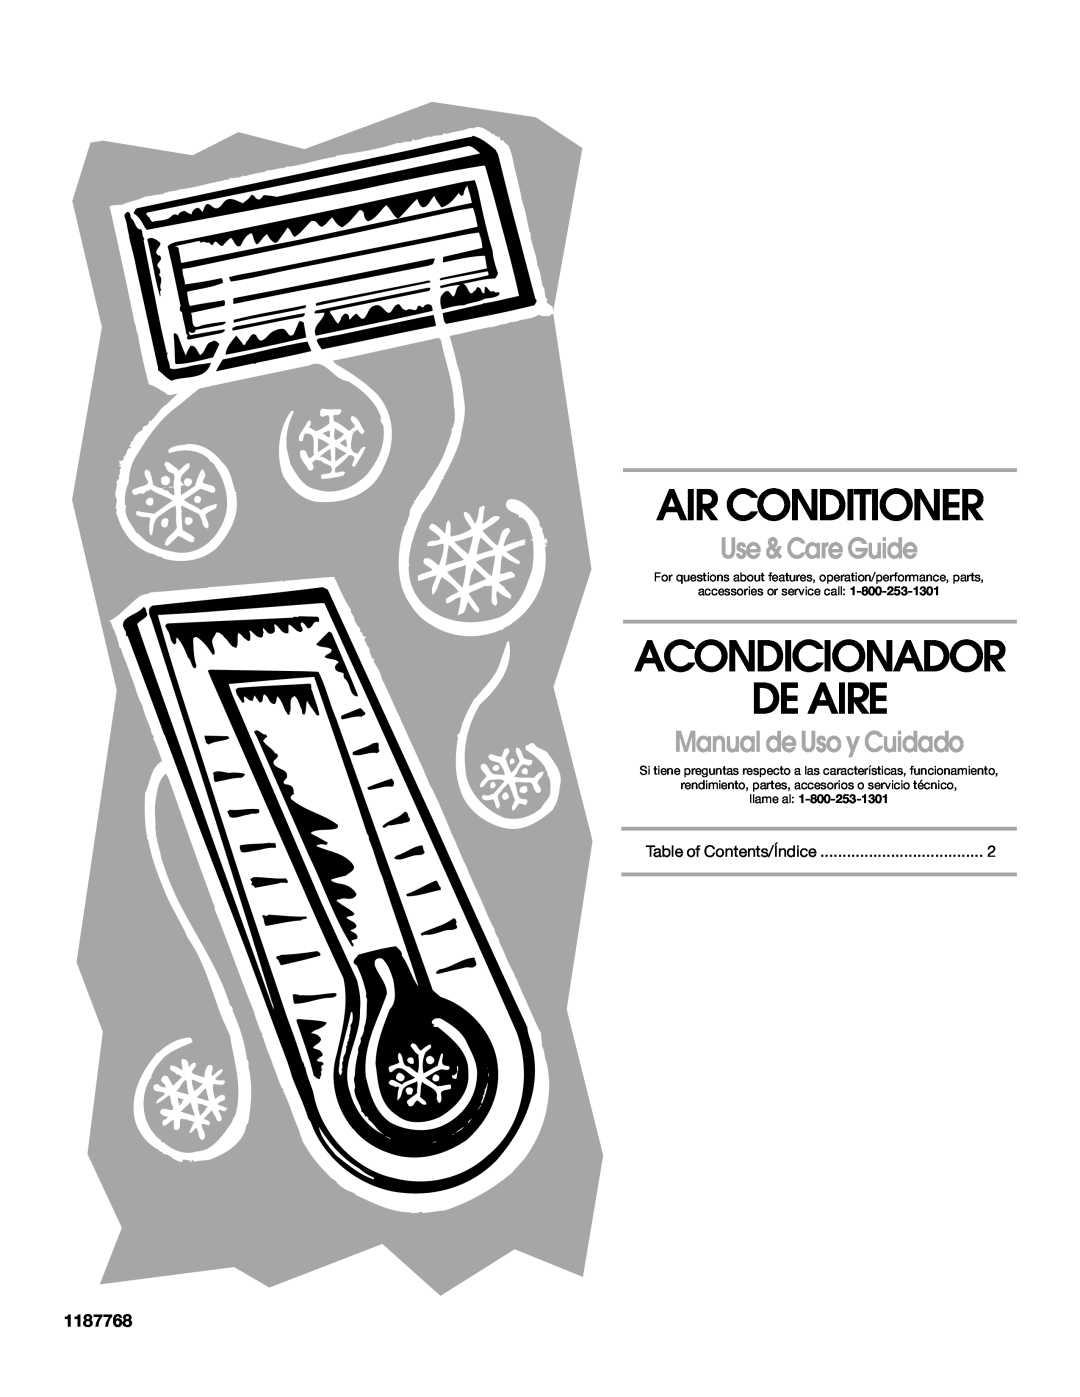 Whirlpool CA10WXP0 manual Air Conditioner, Acondicionador De Aire, Use & Care Guide, Manual de Uso y Cuidado, 1187768 